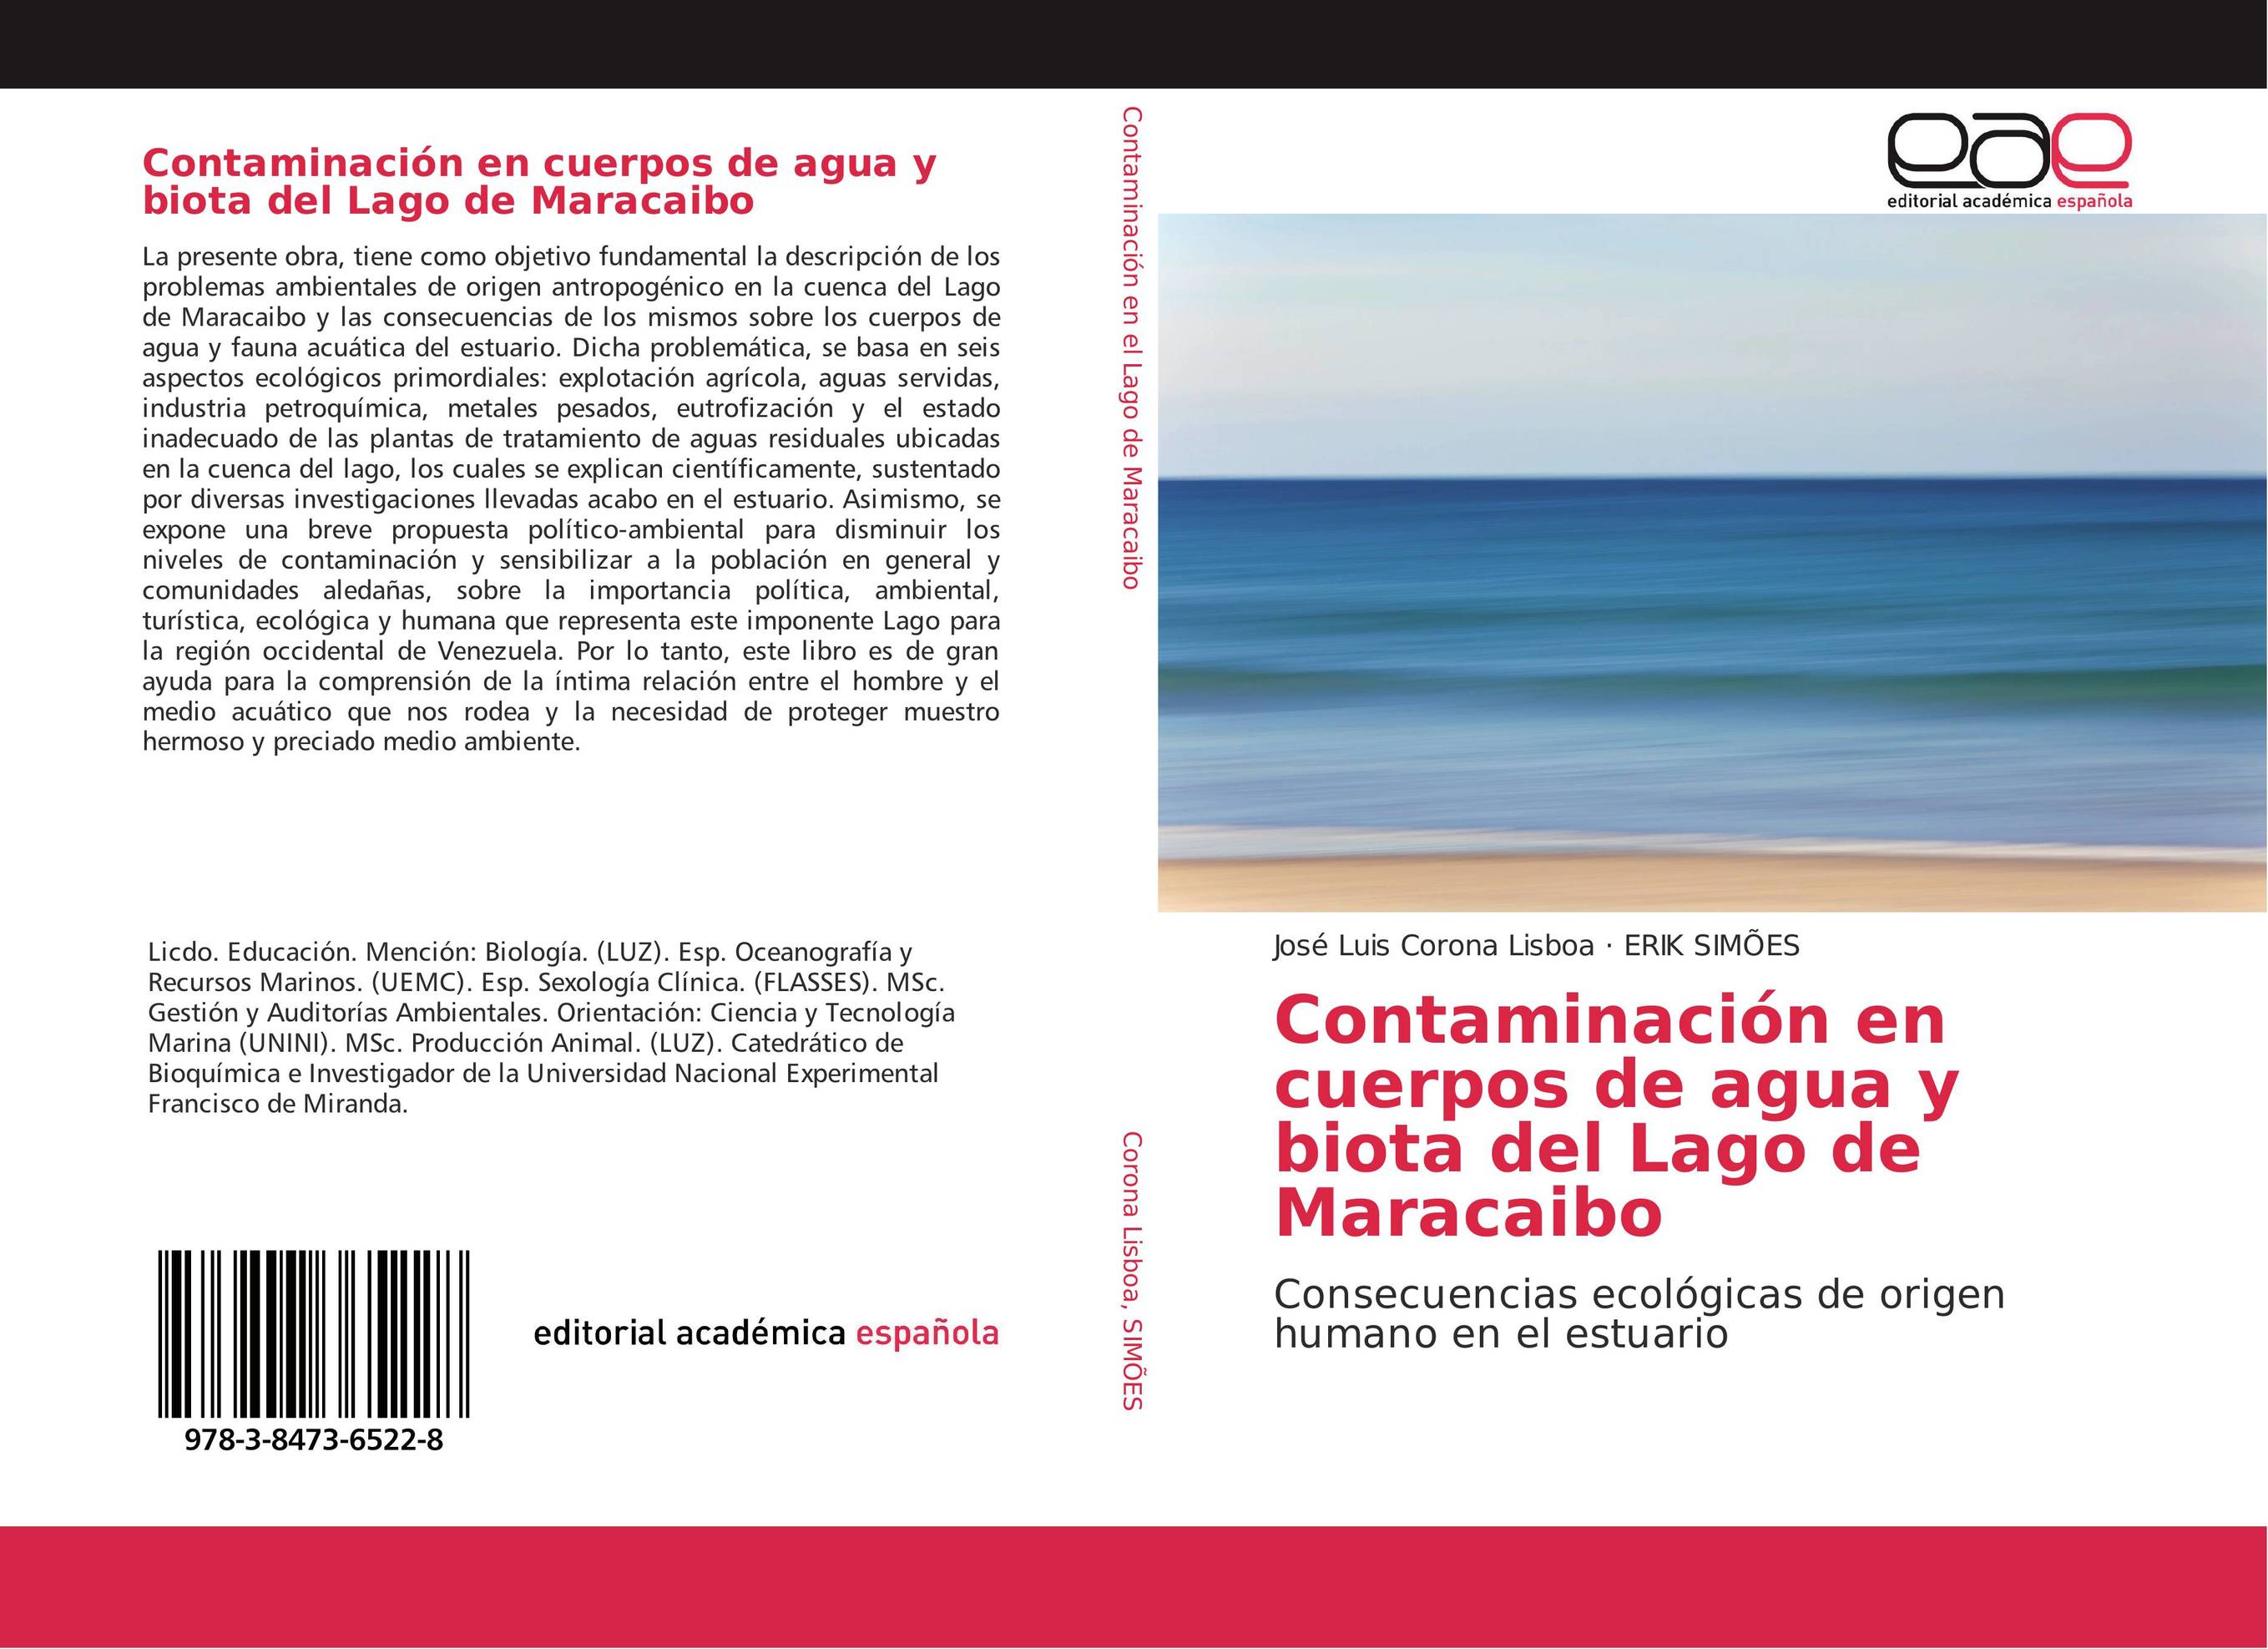 Contaminación en cuerpos de agua y biota del Lago de Maracaibo